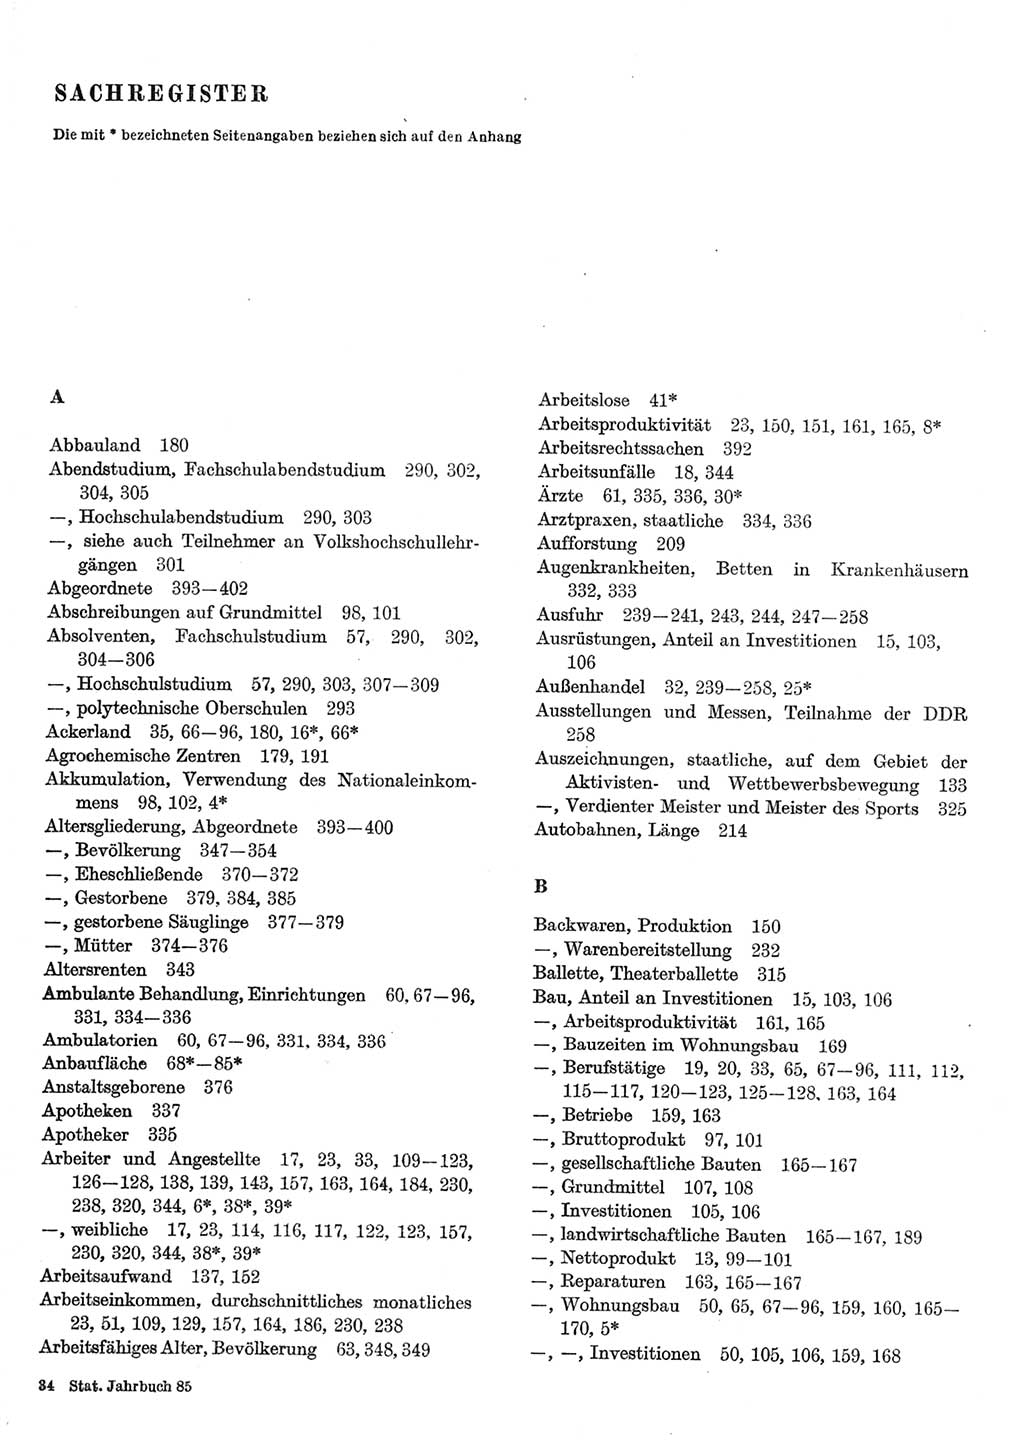 Statistisches Jahrbuch der Deutschen Demokratischen Republik (DDR) 1985, Seite 1 (Stat. Jb. DDR 1985, S. 1)